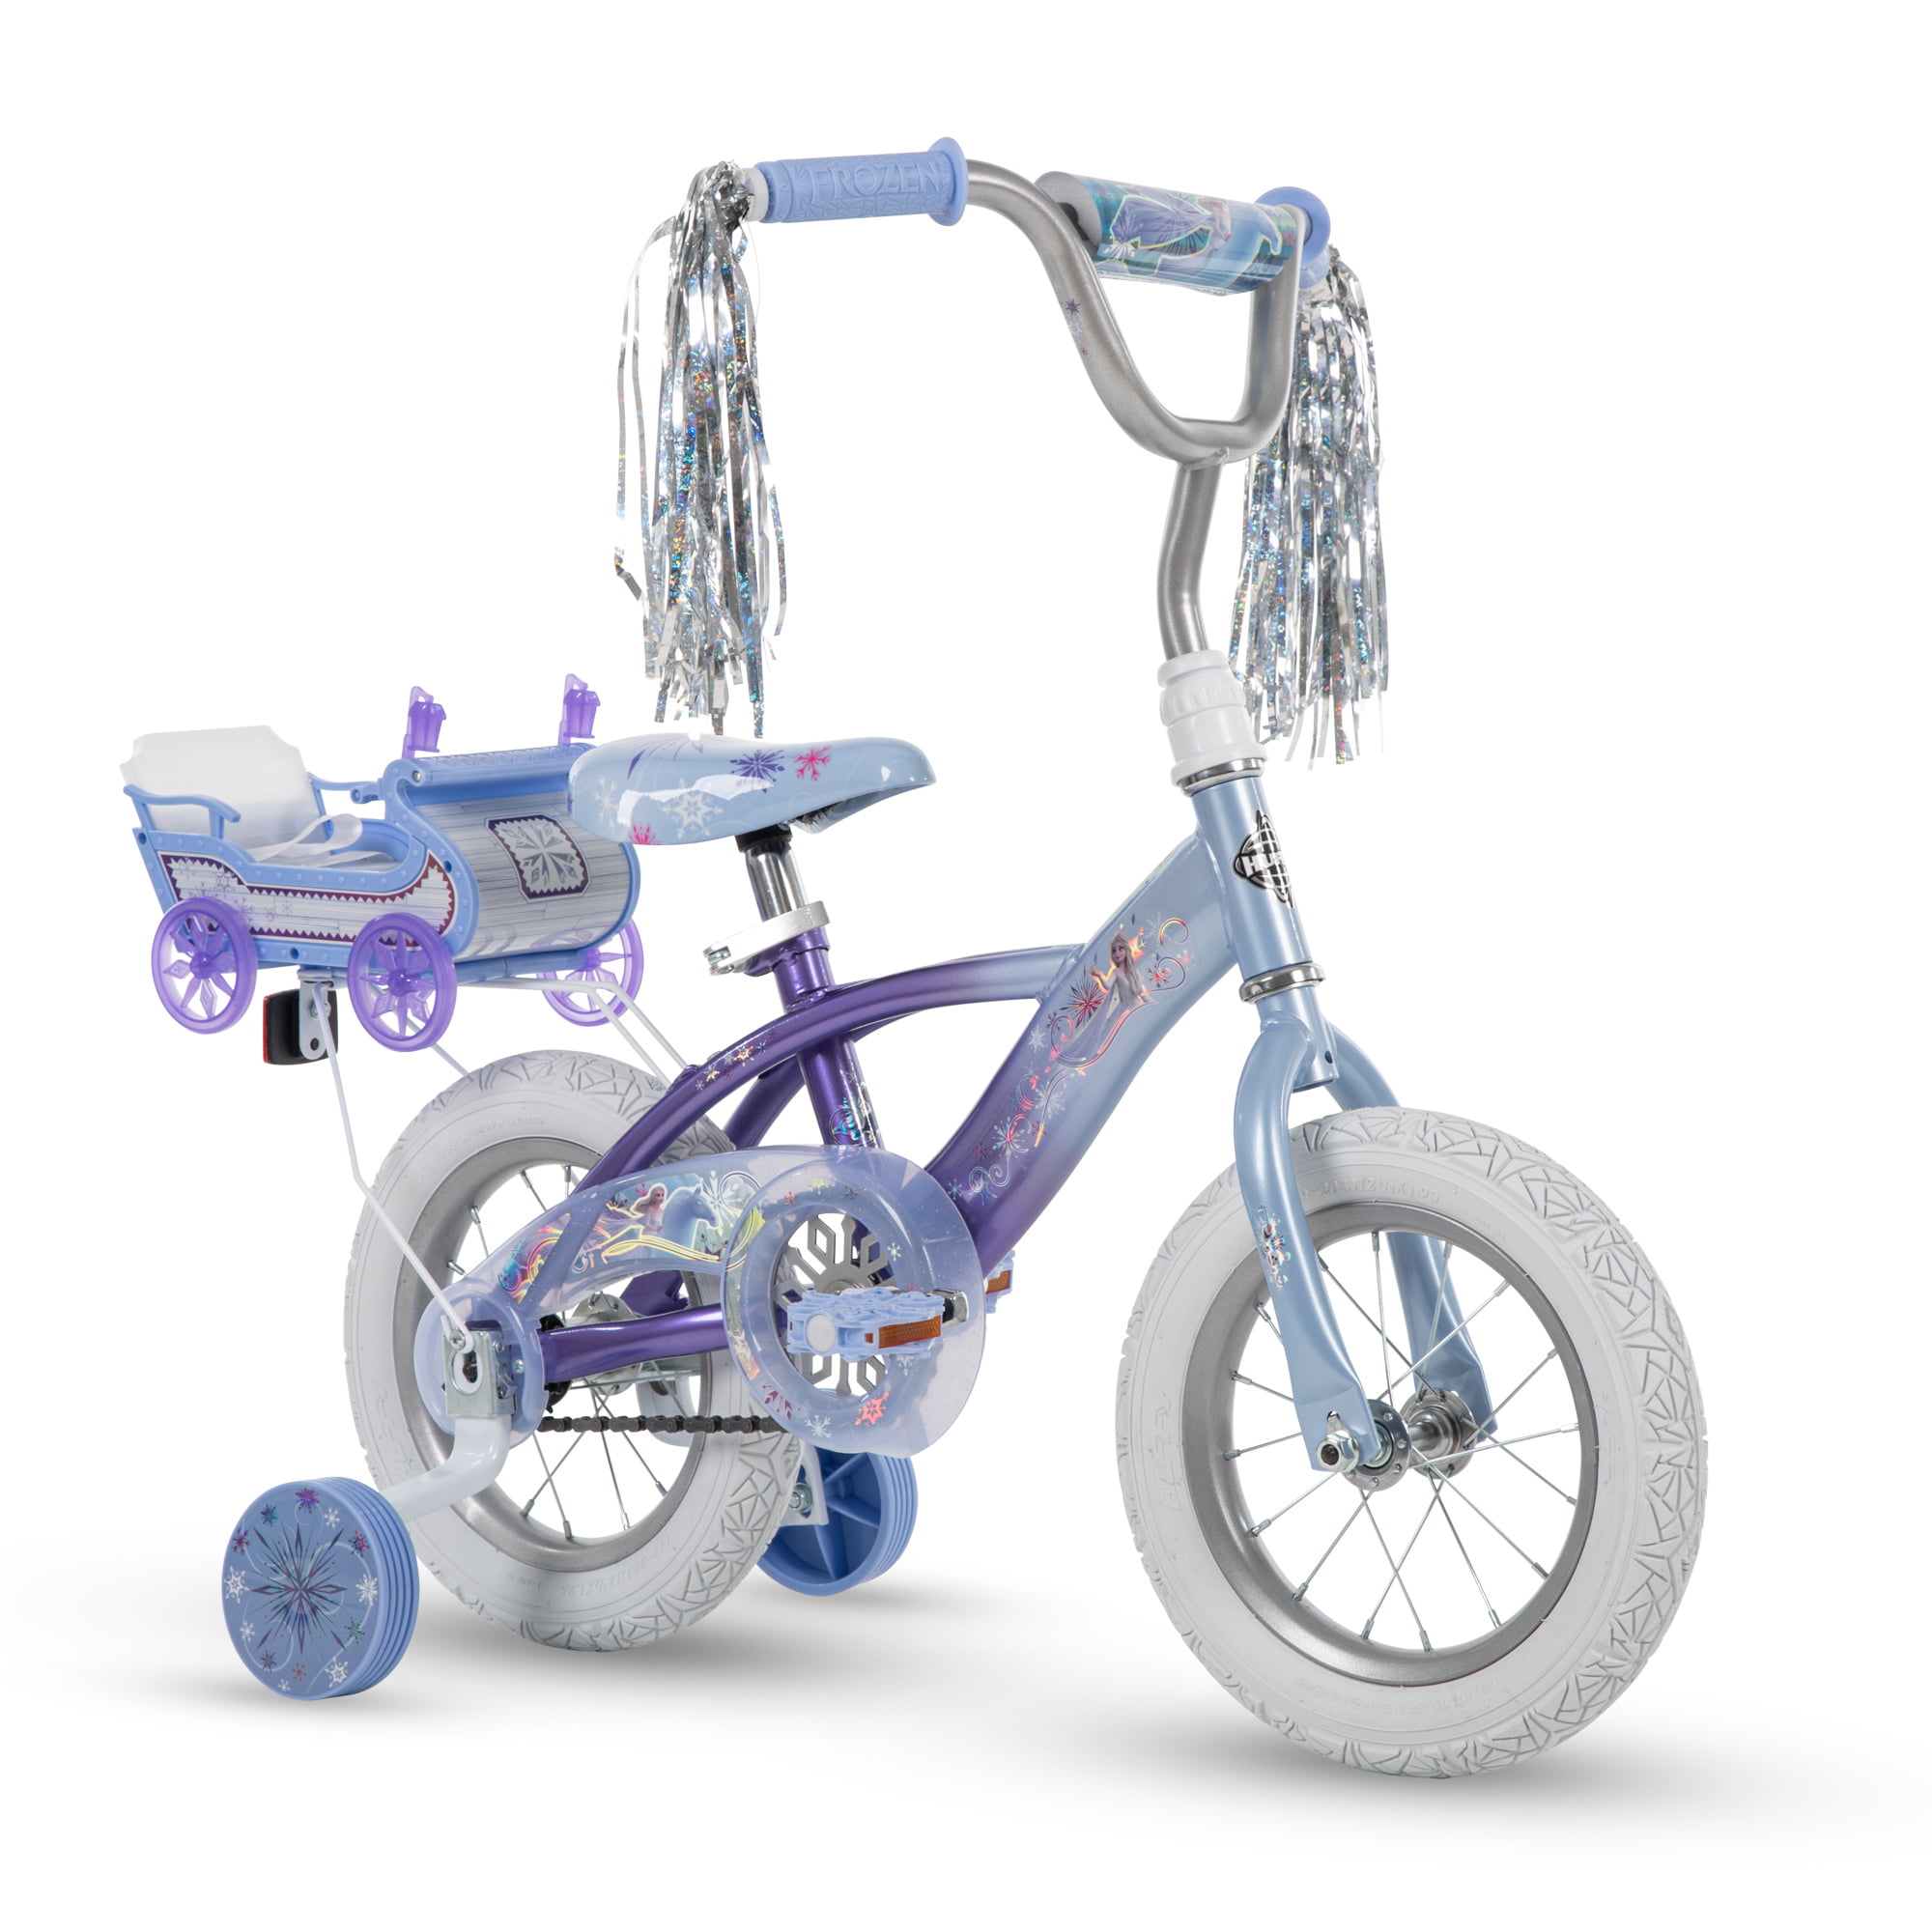 12" Bicicleta Minnie Mouse Huffy Rodinhas Boneca transportadora Bicicleta Rosa Para Meninas 